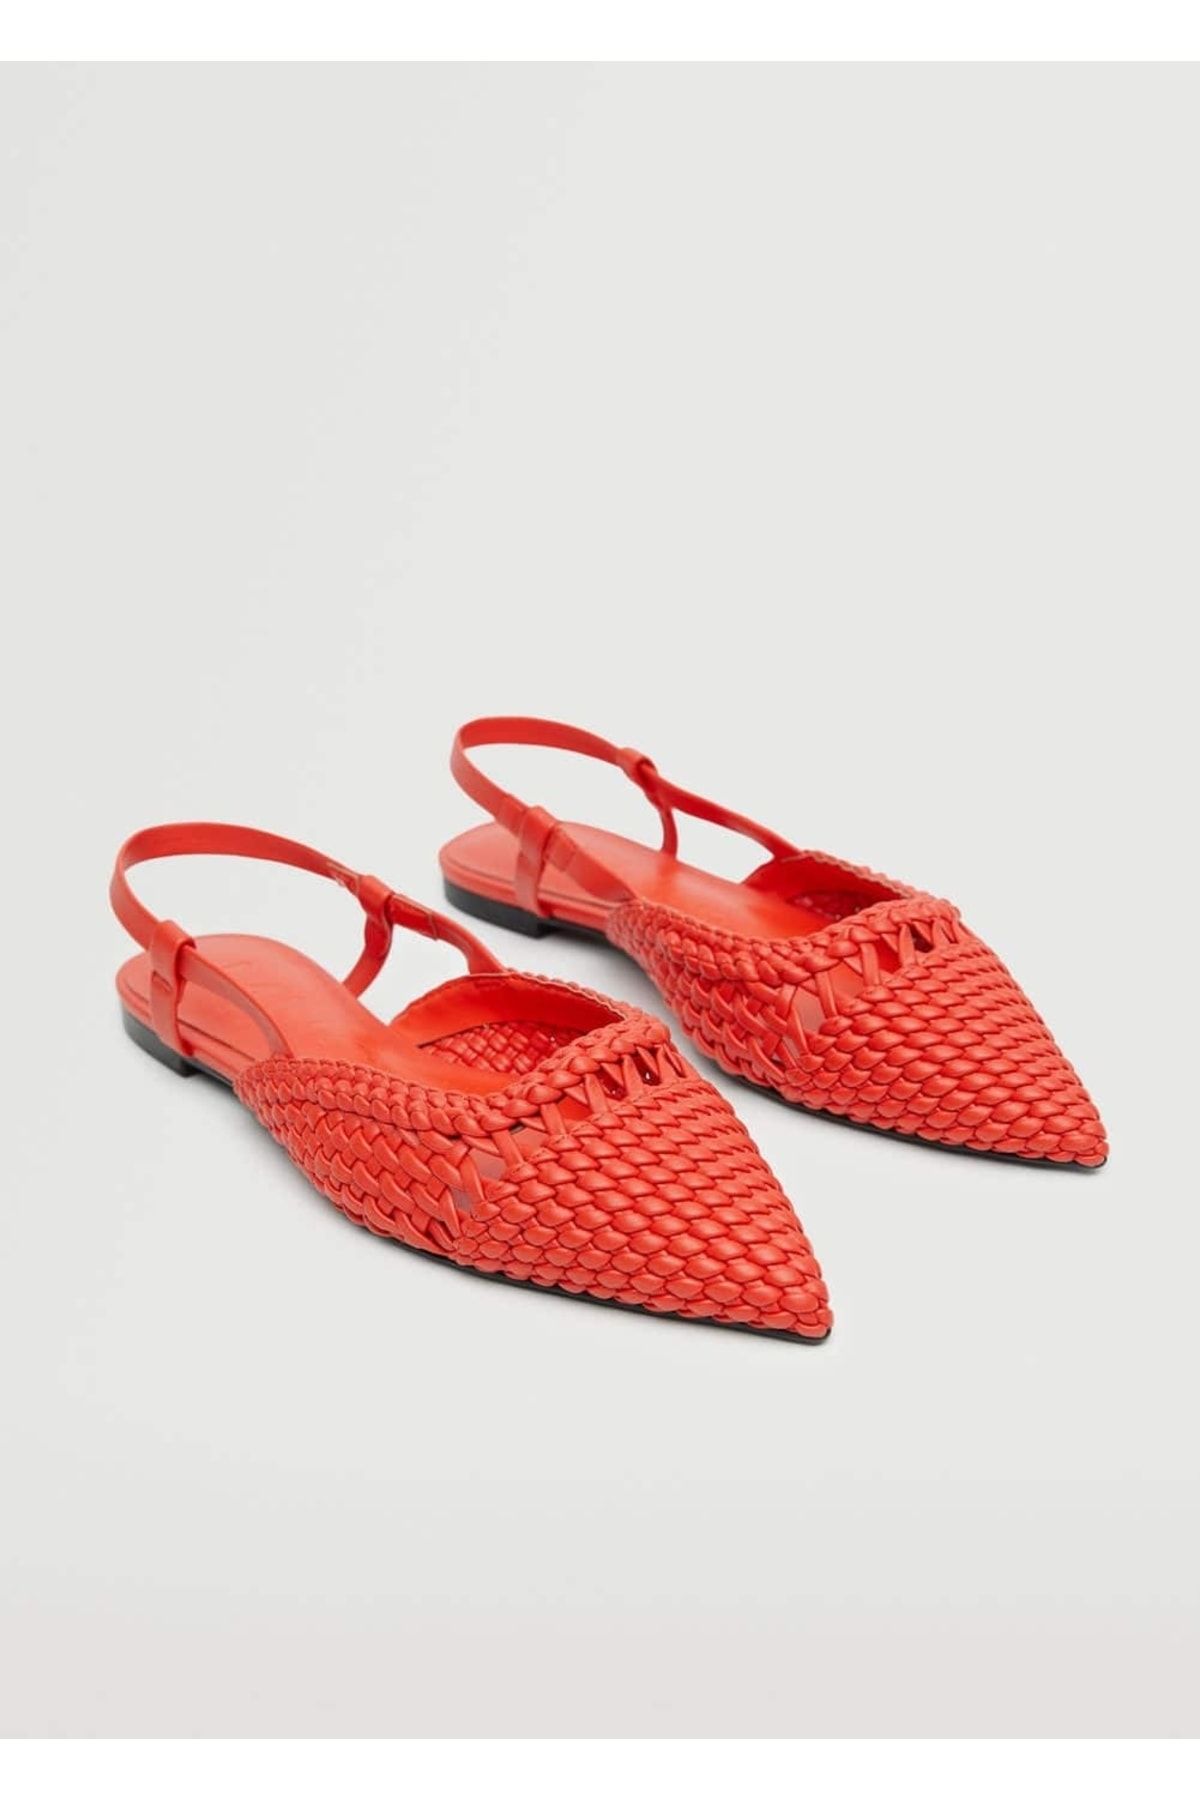 MANGO Örgü Desenli Ayakkabı